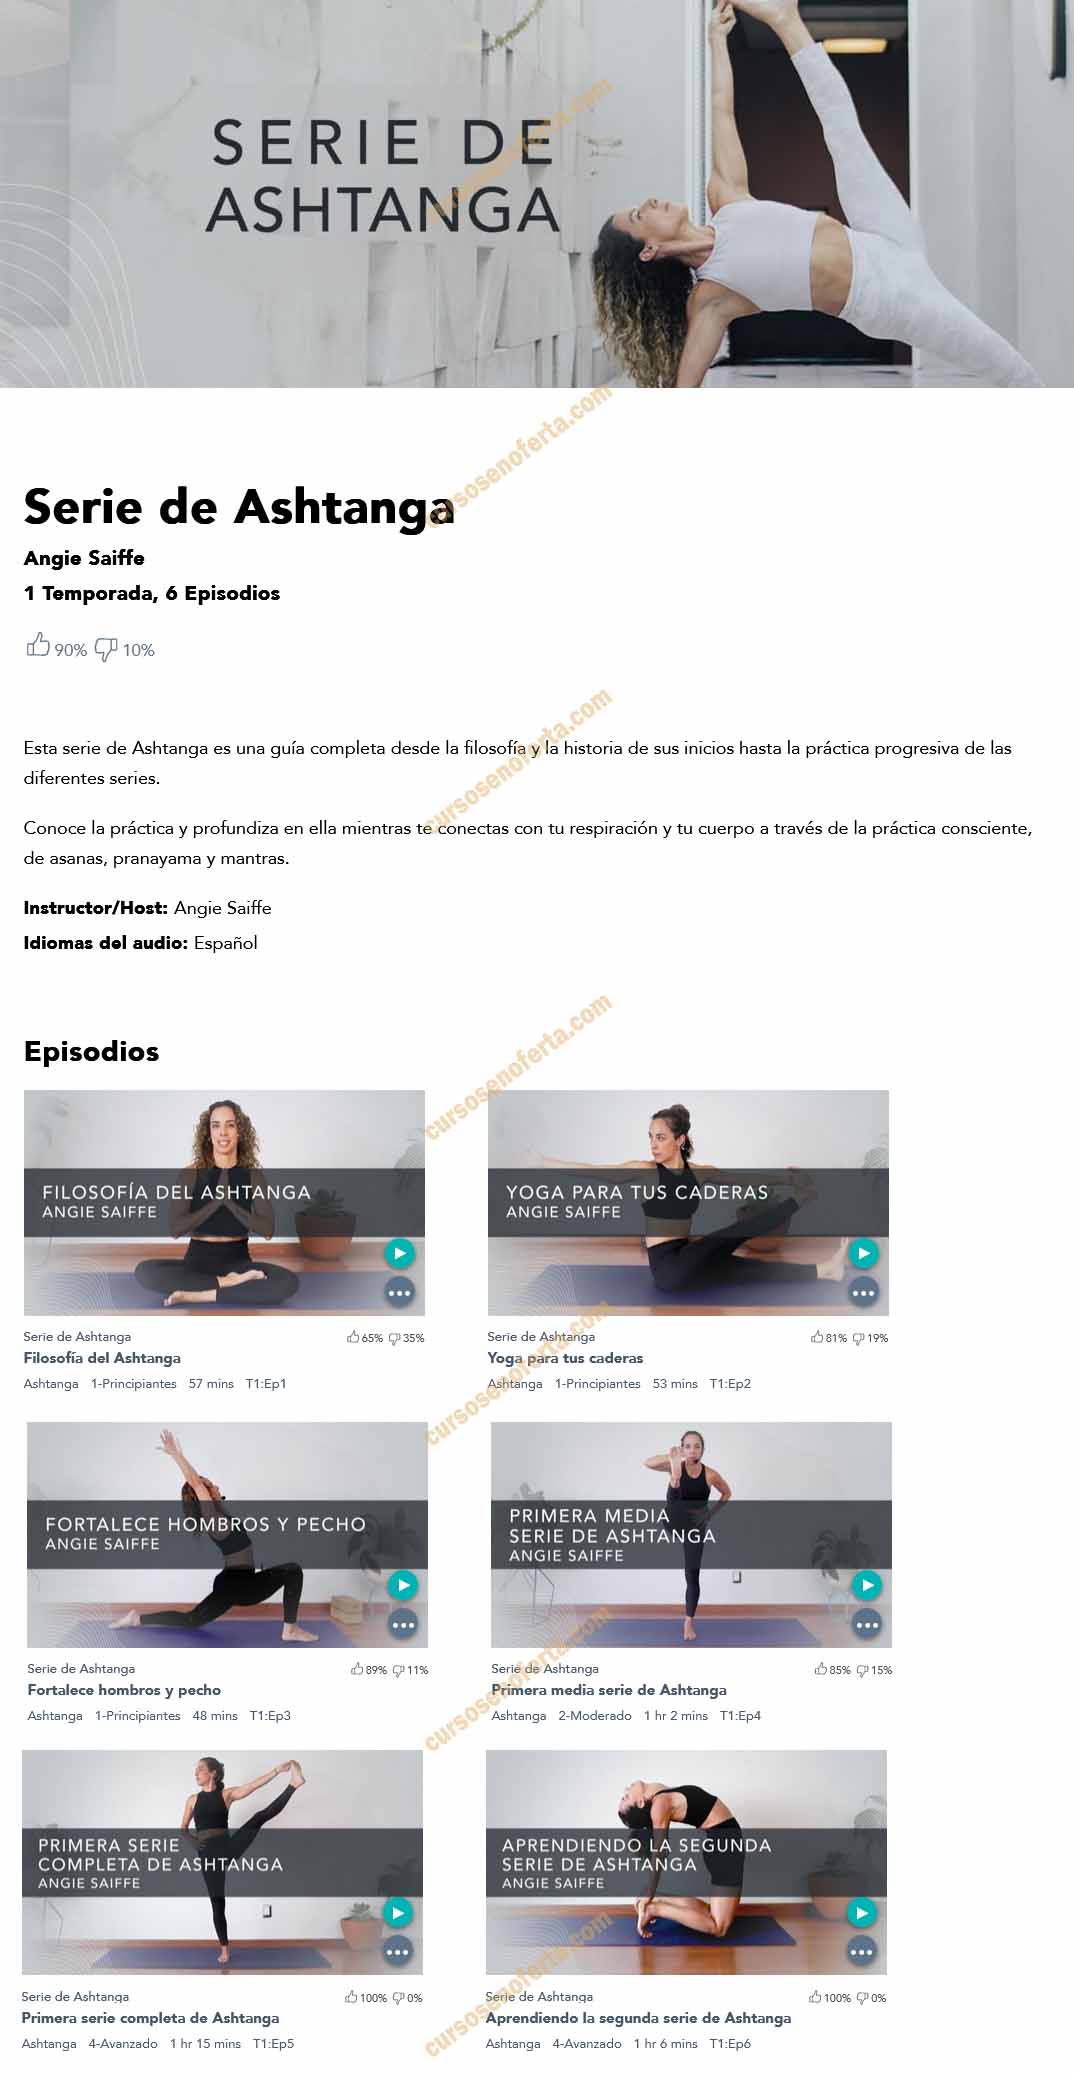 Serie de Ashtanga (Yoga)